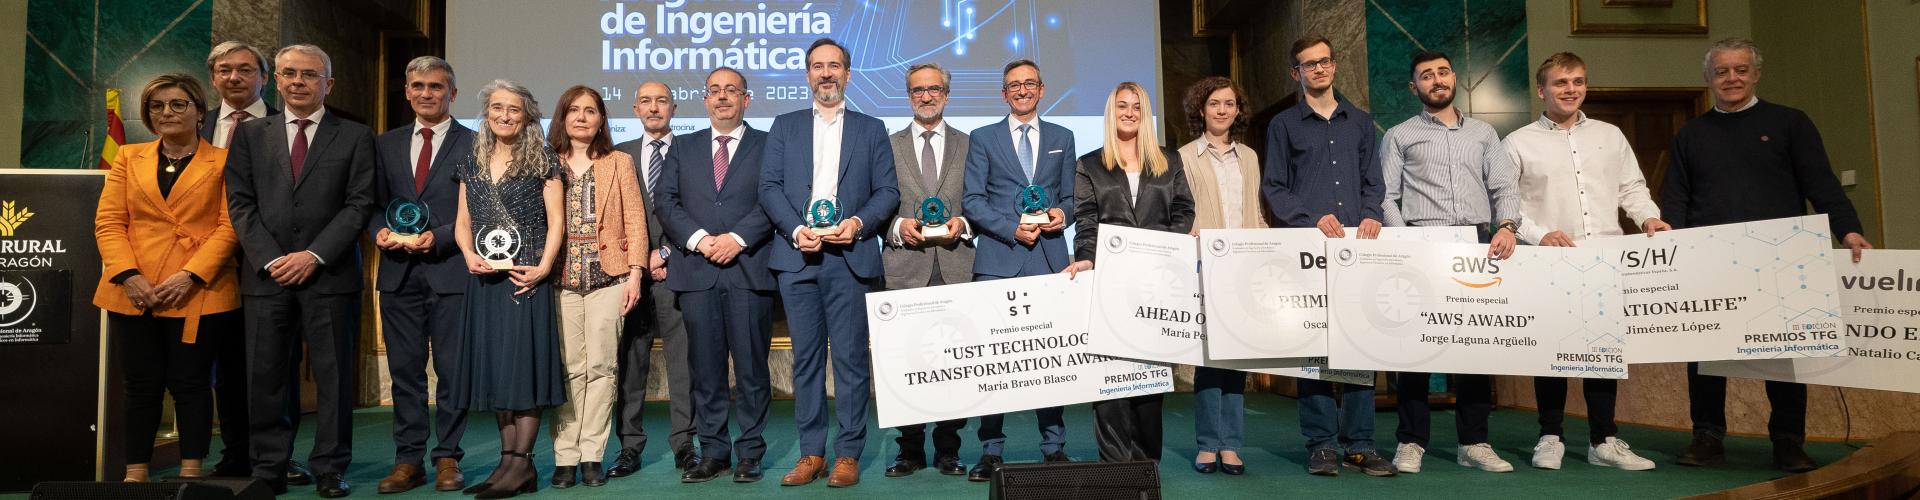 III Edición premios aragoneses de Ingeniería Informática